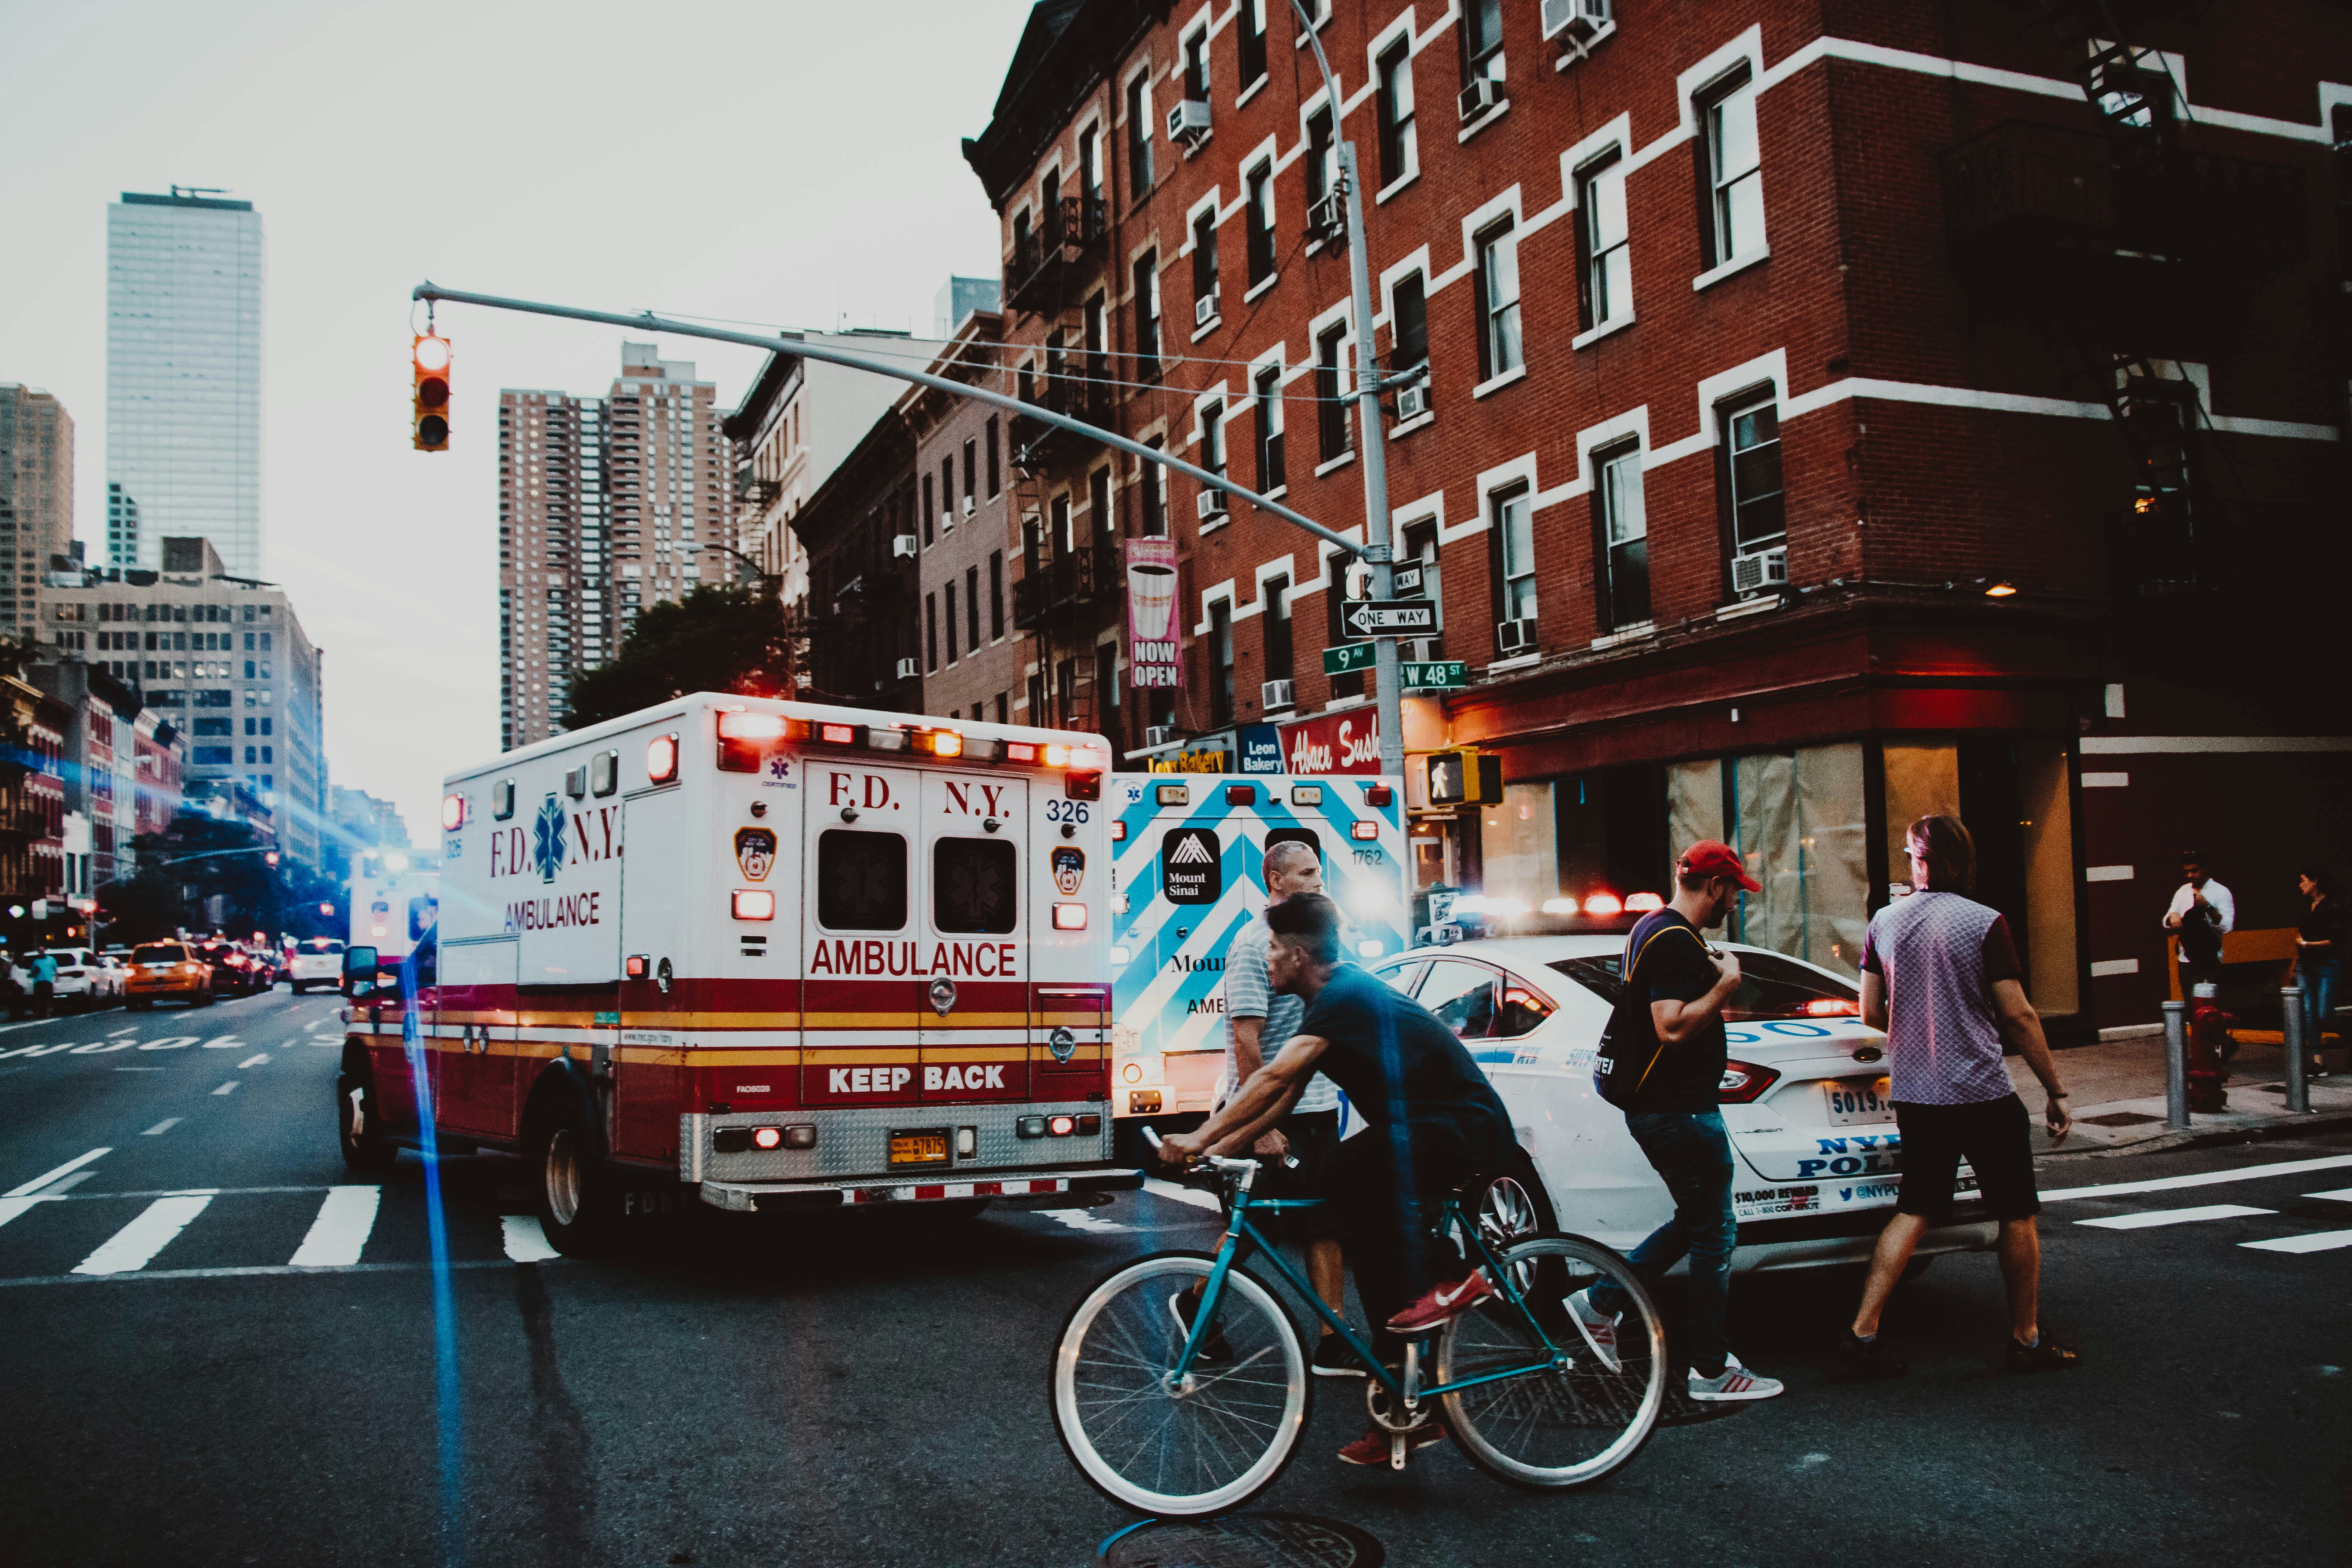 Ambulance | Photo: unsplash